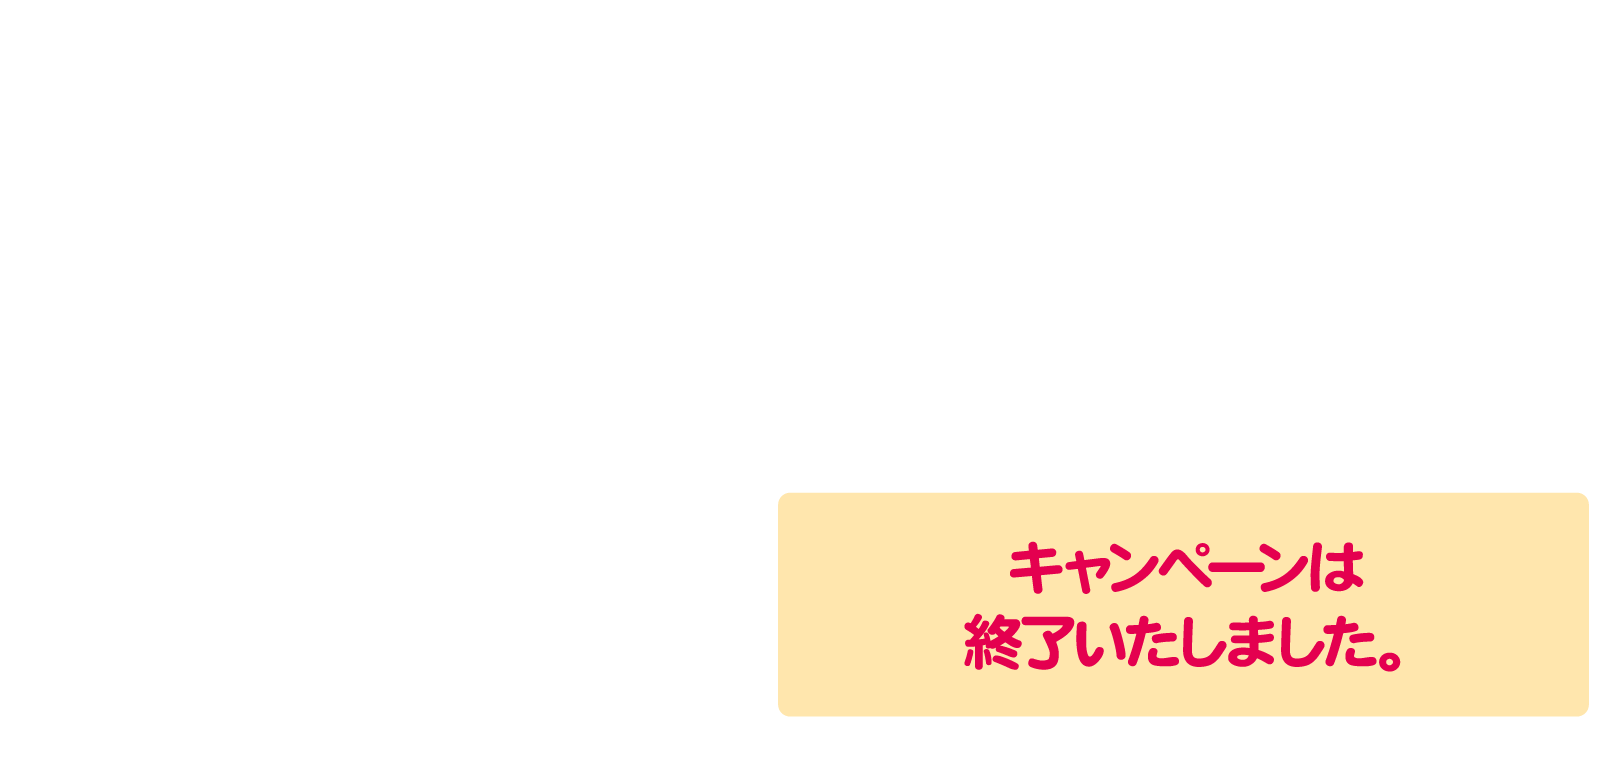 ペコちゃんオリジナルデザインQUOカード（1,000円分）5,000名様にプレゼント！